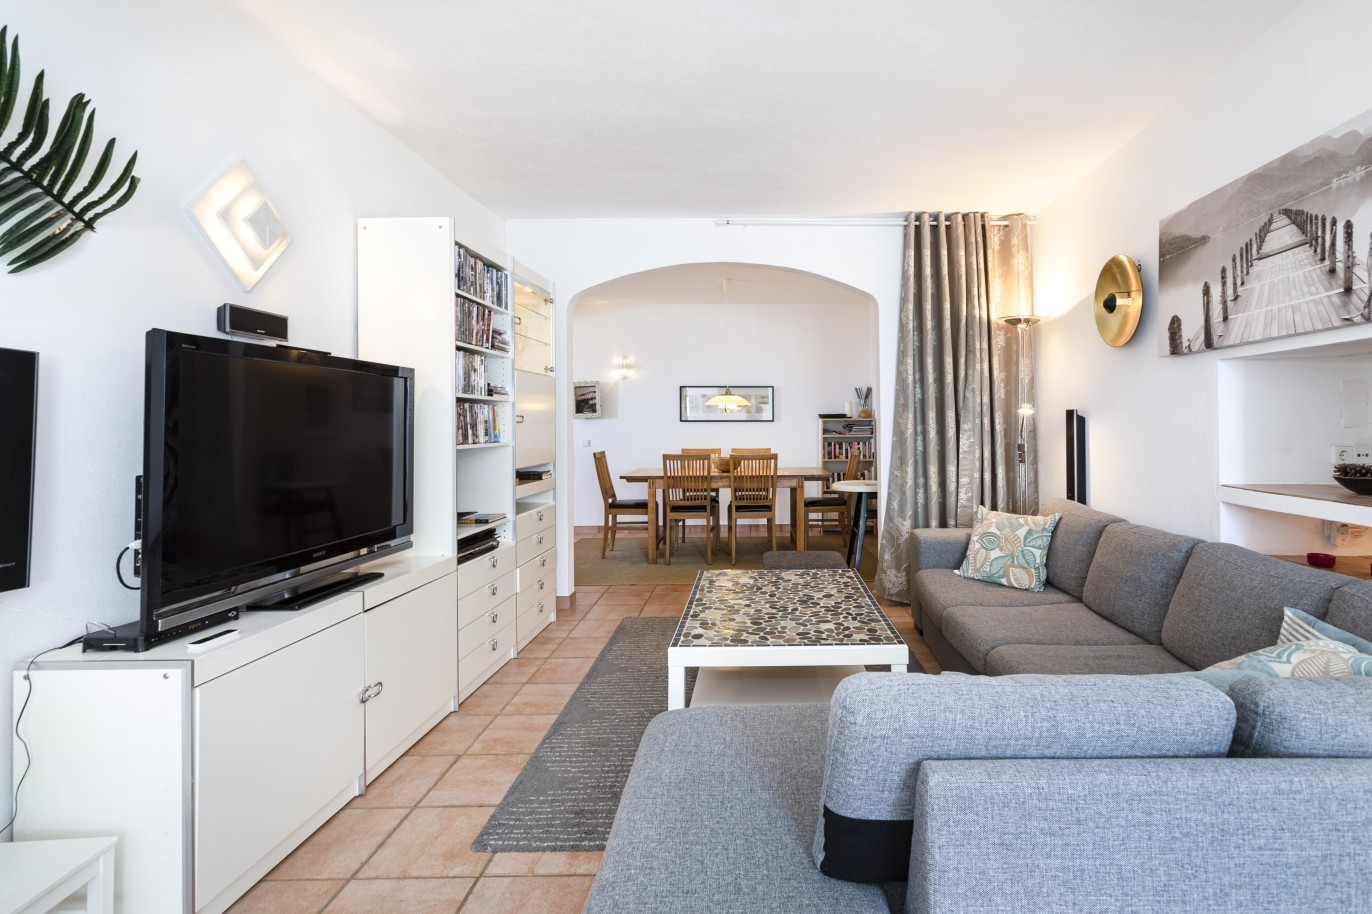 5 bedroom villa with pool and sea view, for sale in Estoi, Algarve_230480